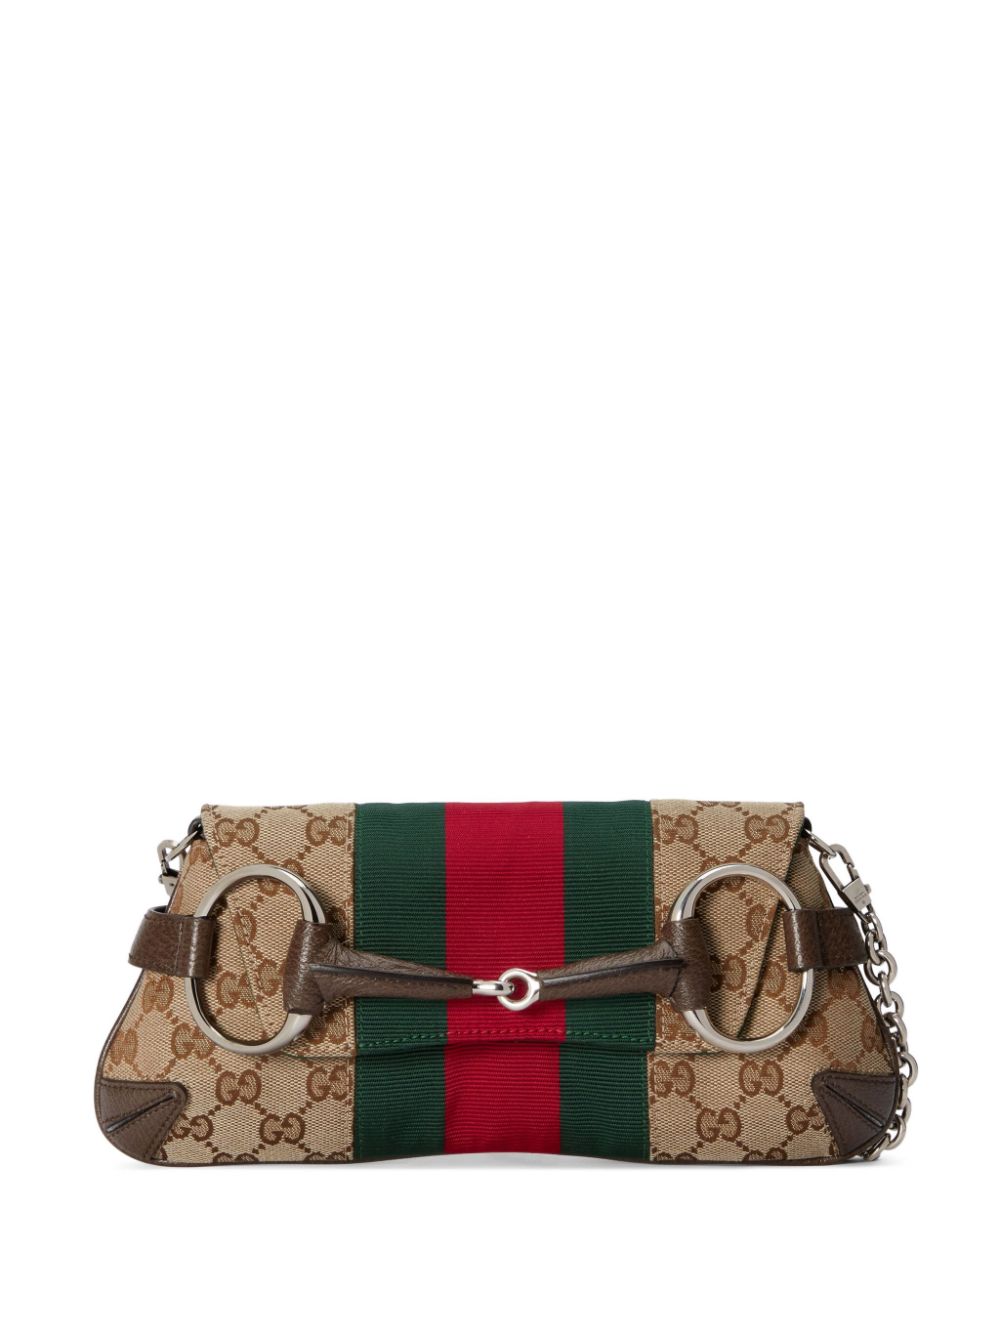 Gucci Small Horsebit Chain Shoulder Bag